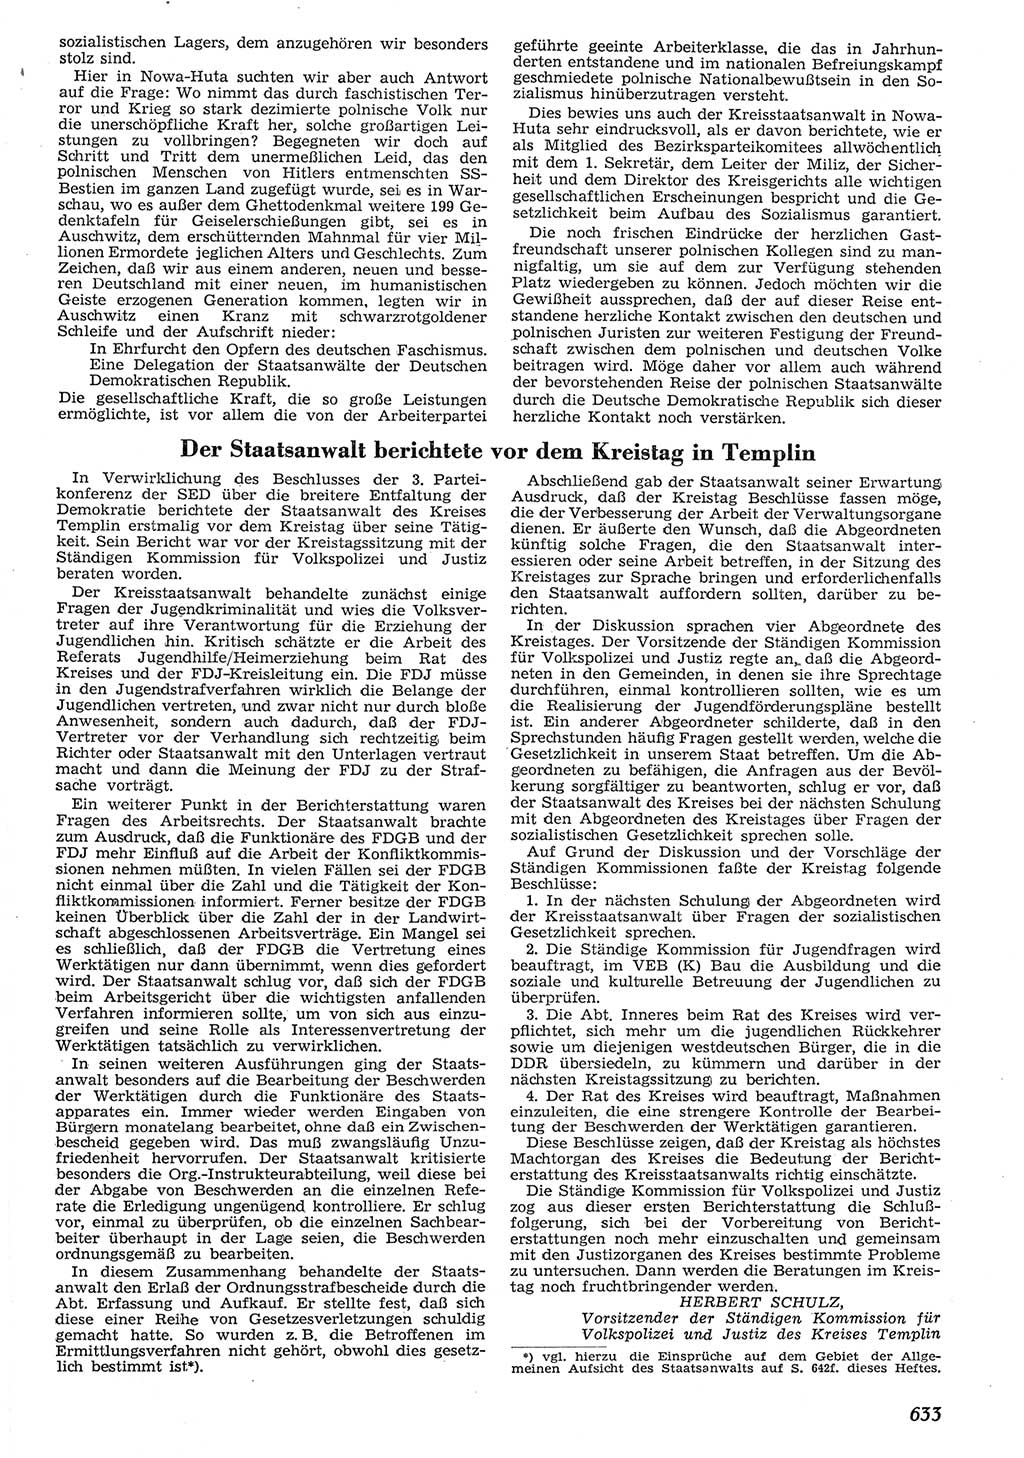 Neue Justiz (NJ), Zeitschrift für Recht und Rechtswissenschaft [Deutsche Demokratische Republik (DDR)], 10. Jahrgang 1956, Seite 633 (NJ DDR 1956, S. 633)